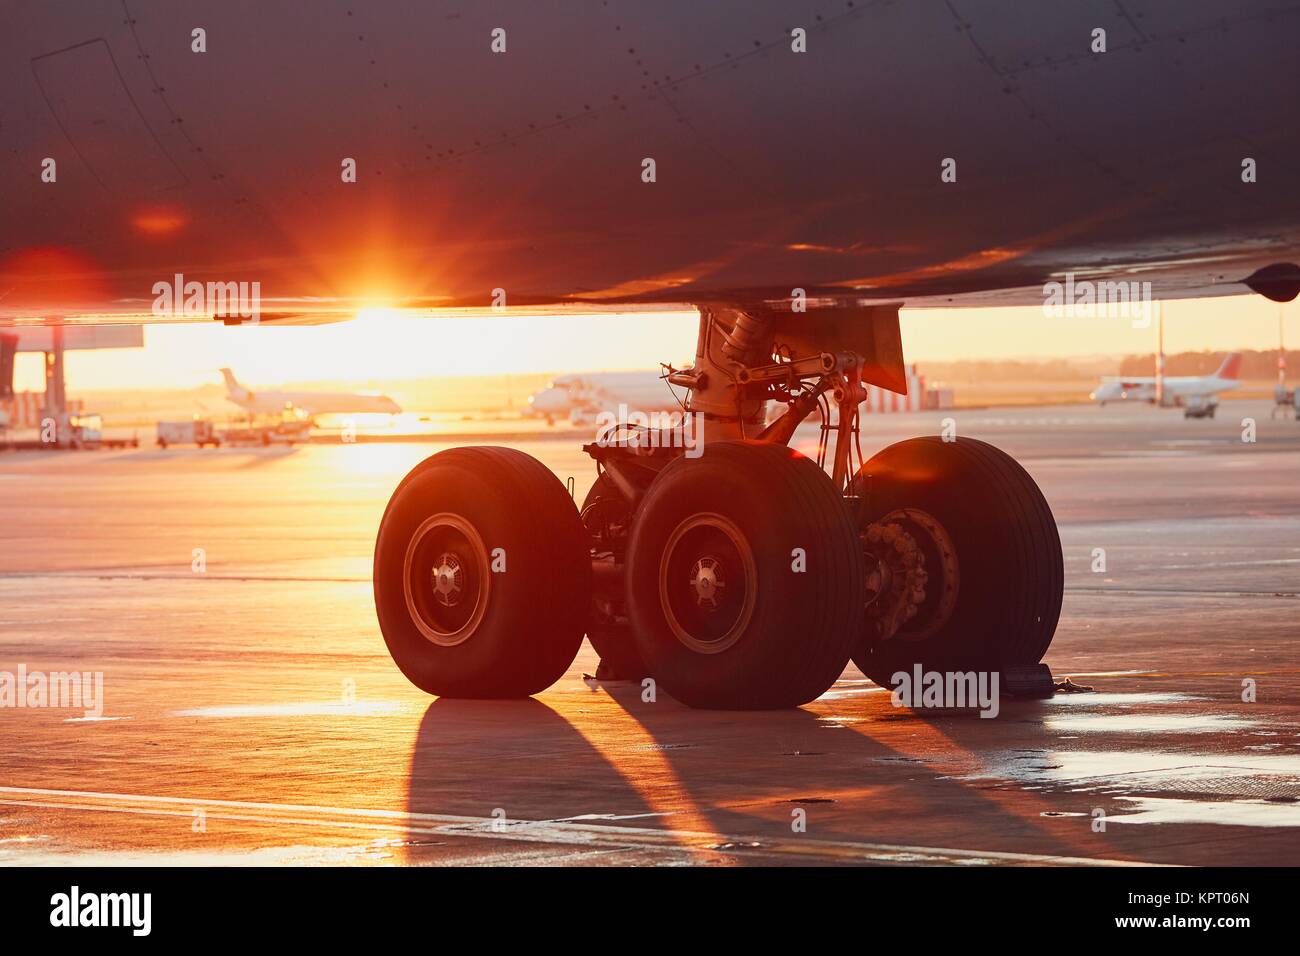 Das Fahrwerk des Flugzeugs. Sonnenuntergang am Flughafen. Stockfoto